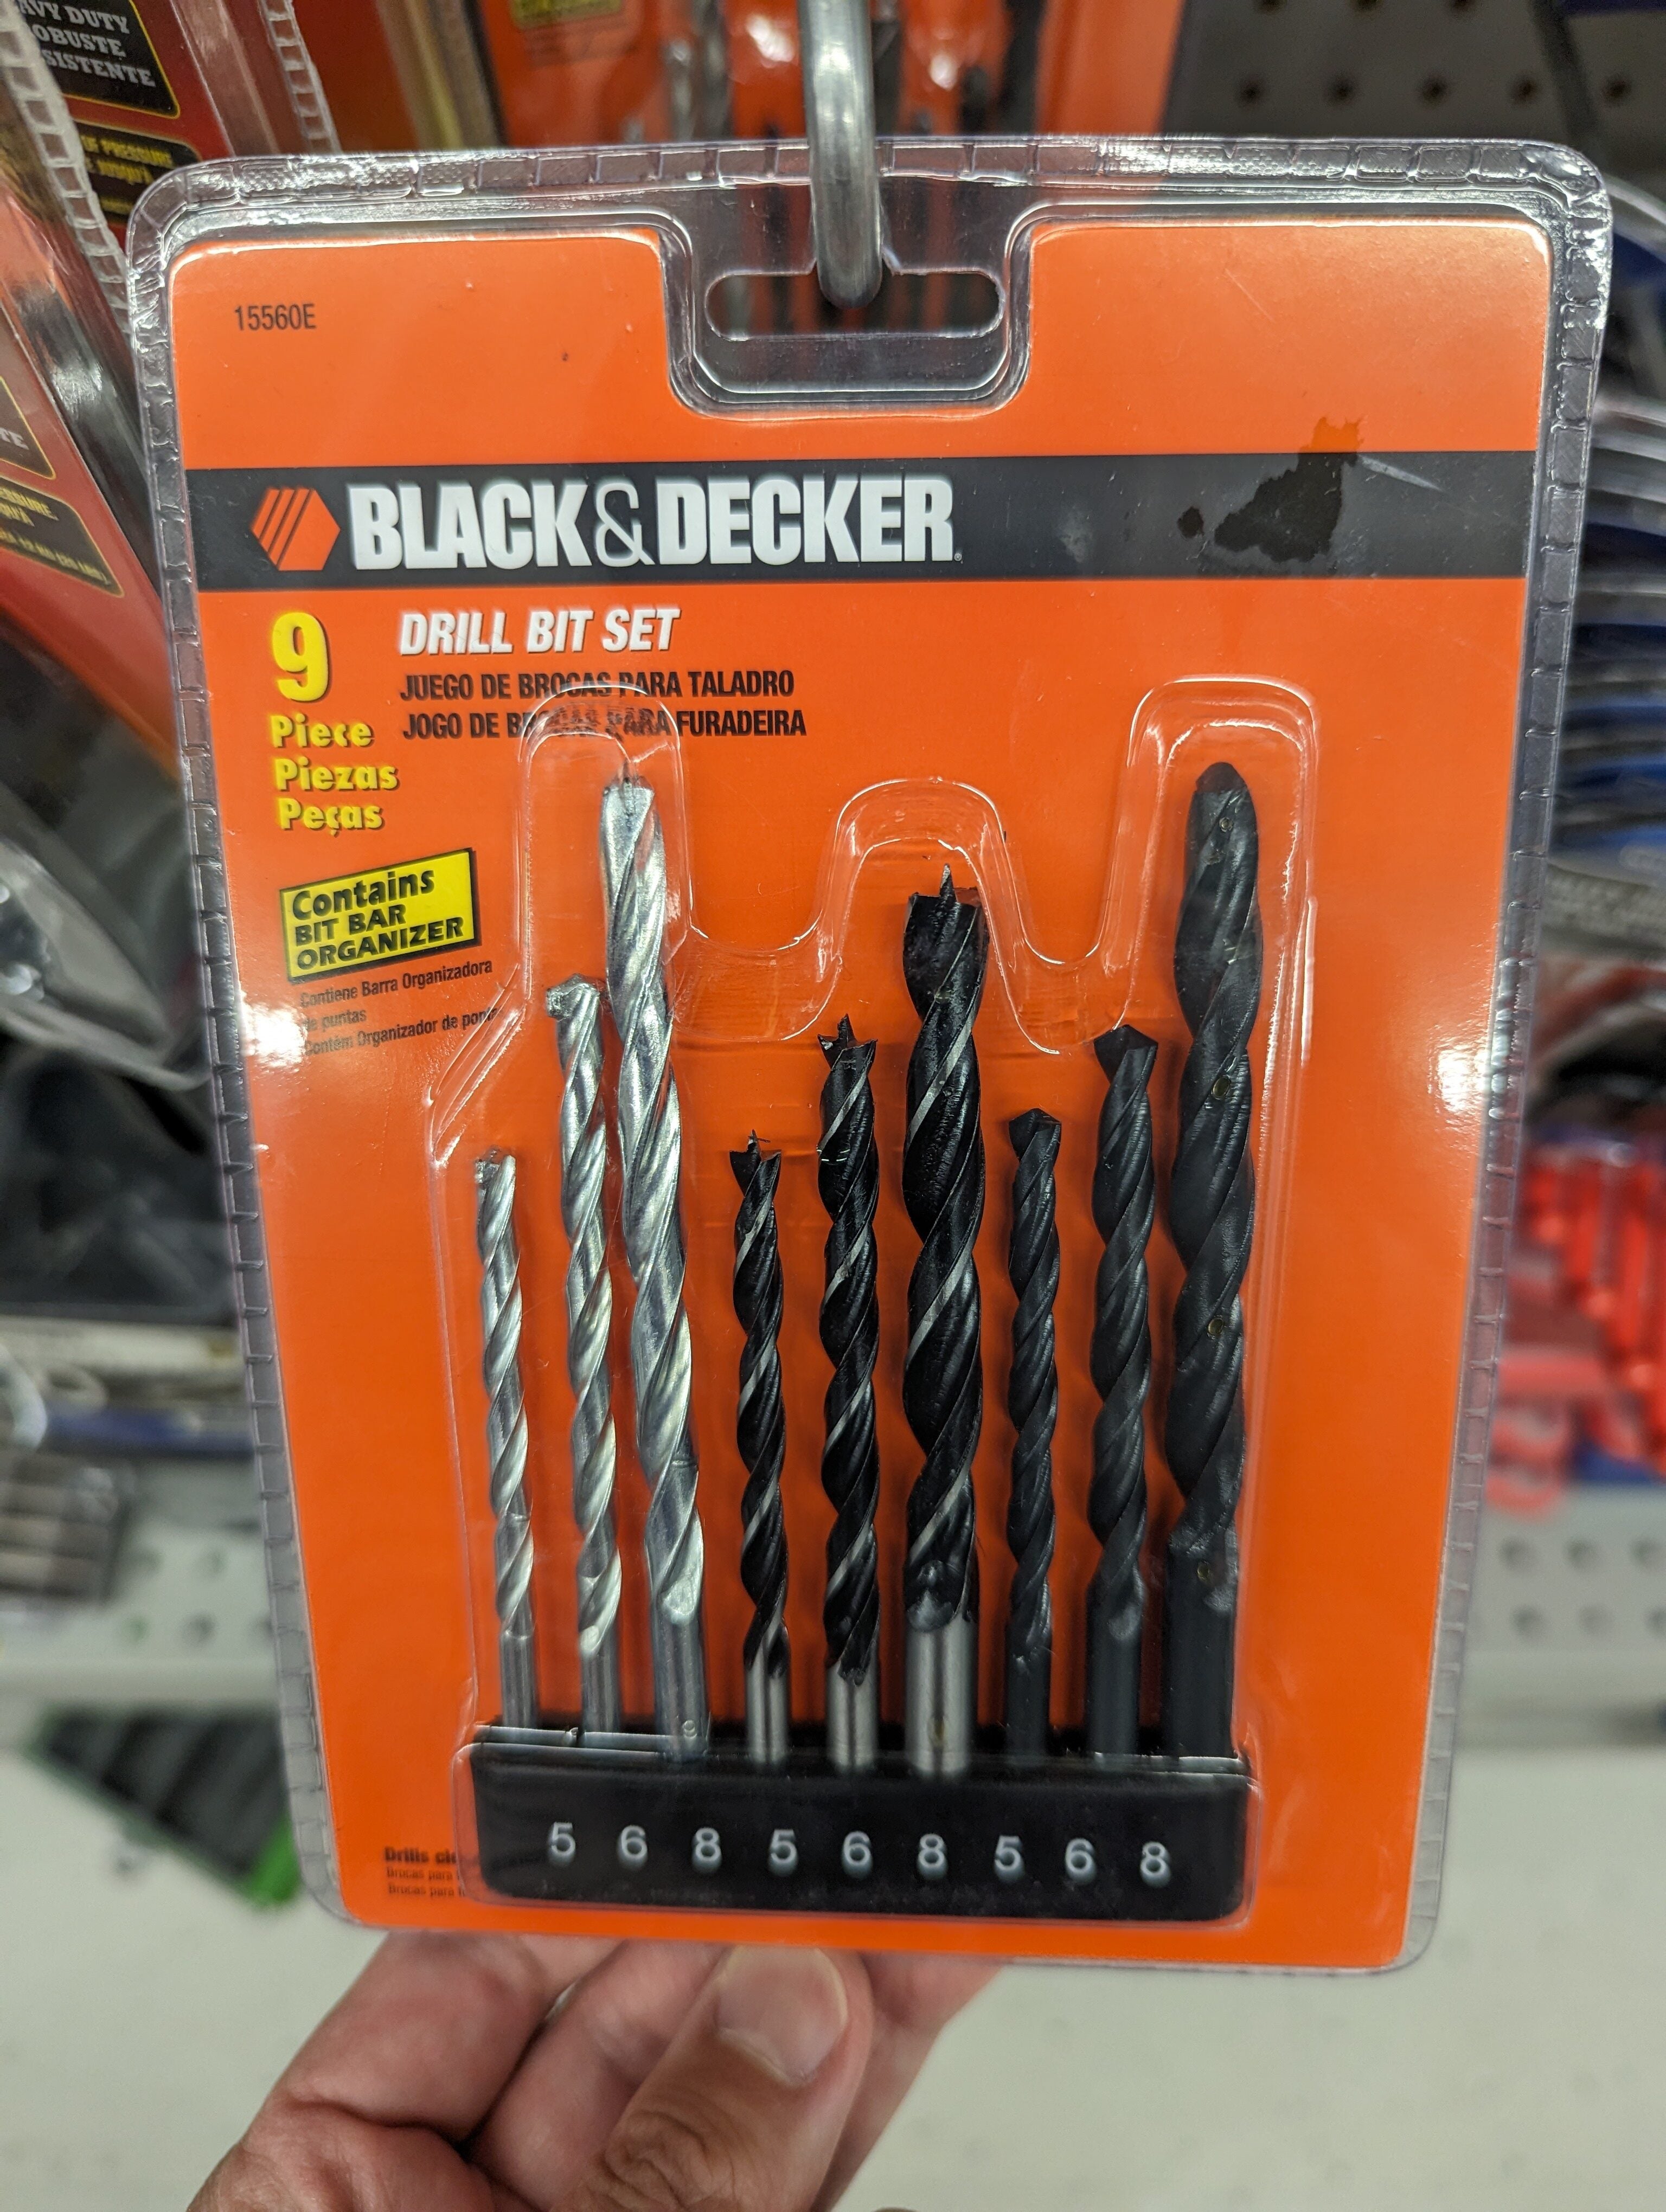 Black & Decker 9 Piece Drill Bit Set With Bit Bar 15560E Metal